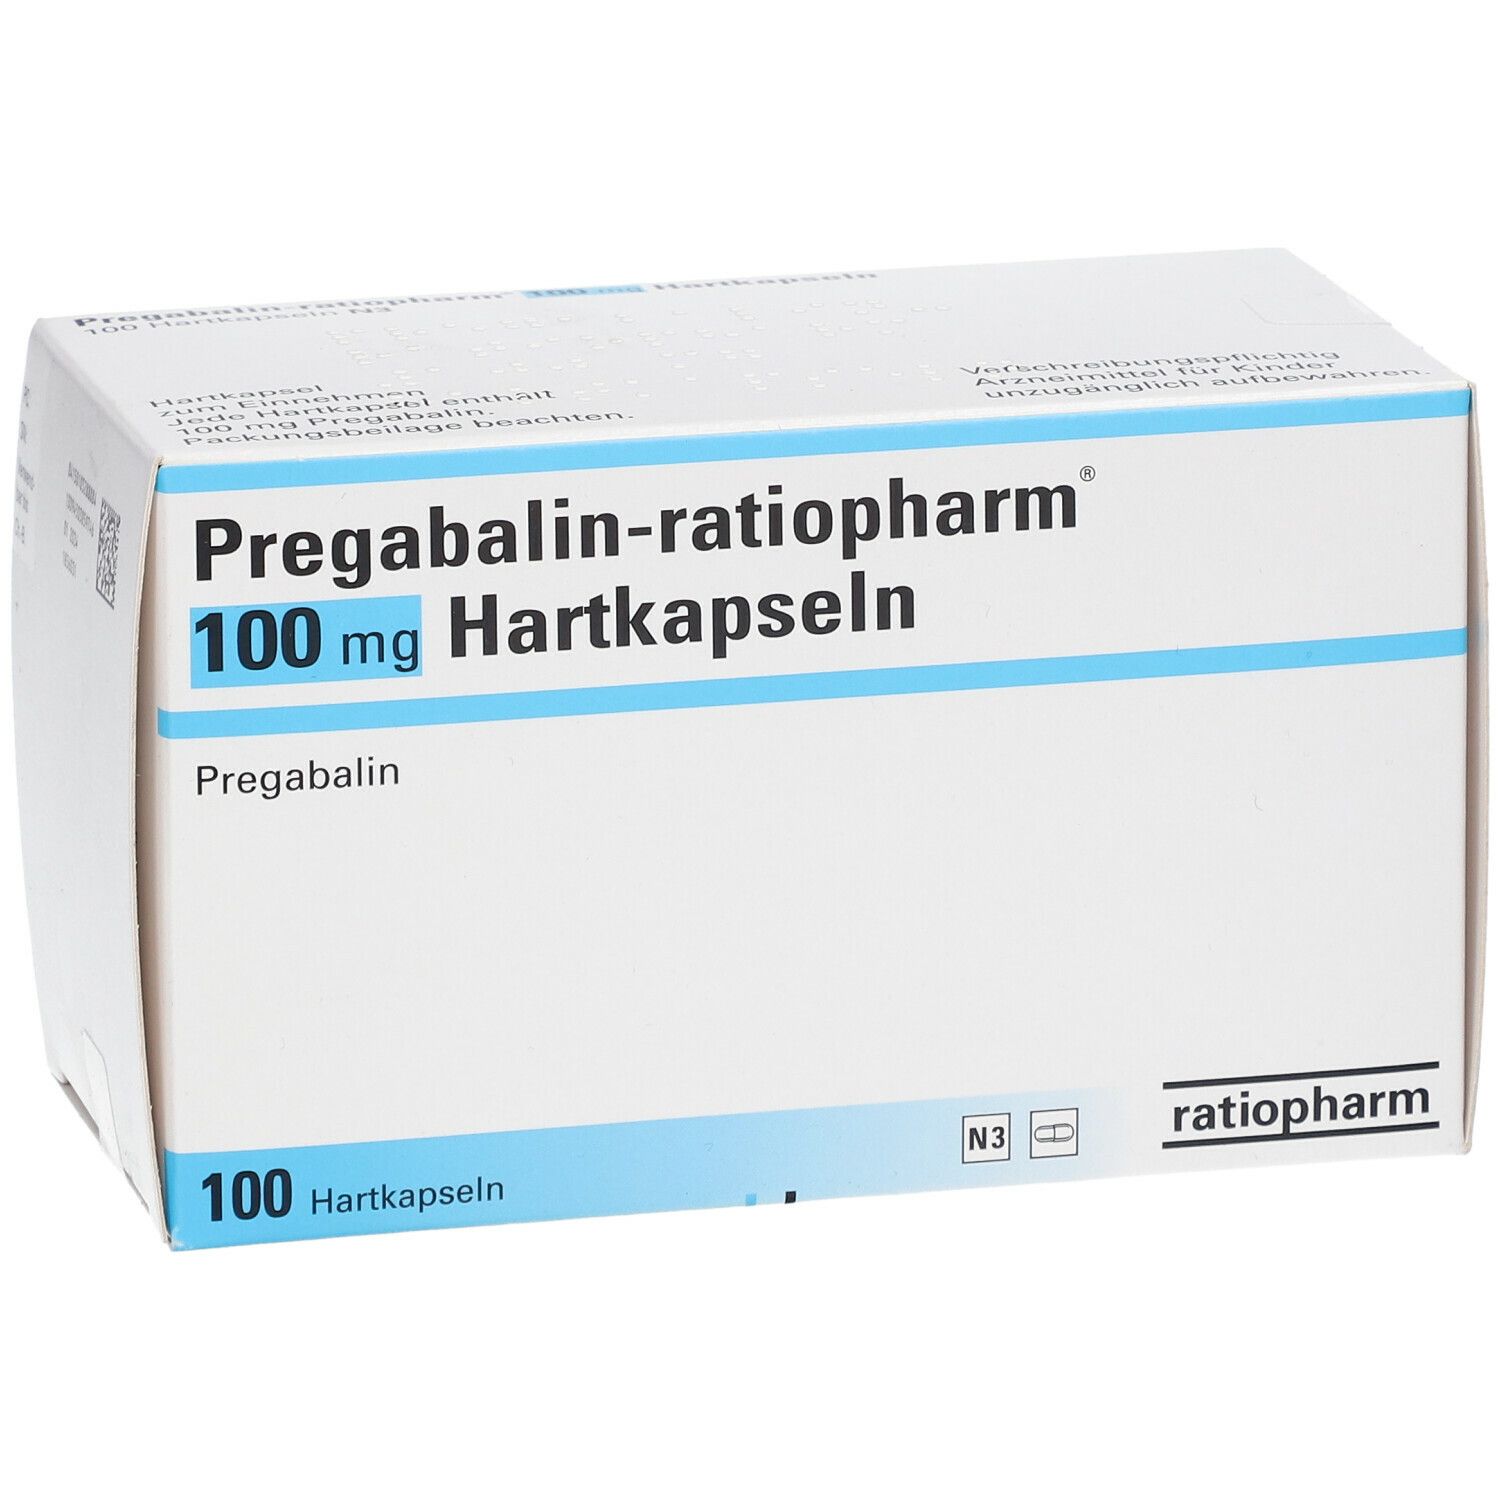 Pregabalin-ratiopharm® mg 100 St - shop-apotheke.com